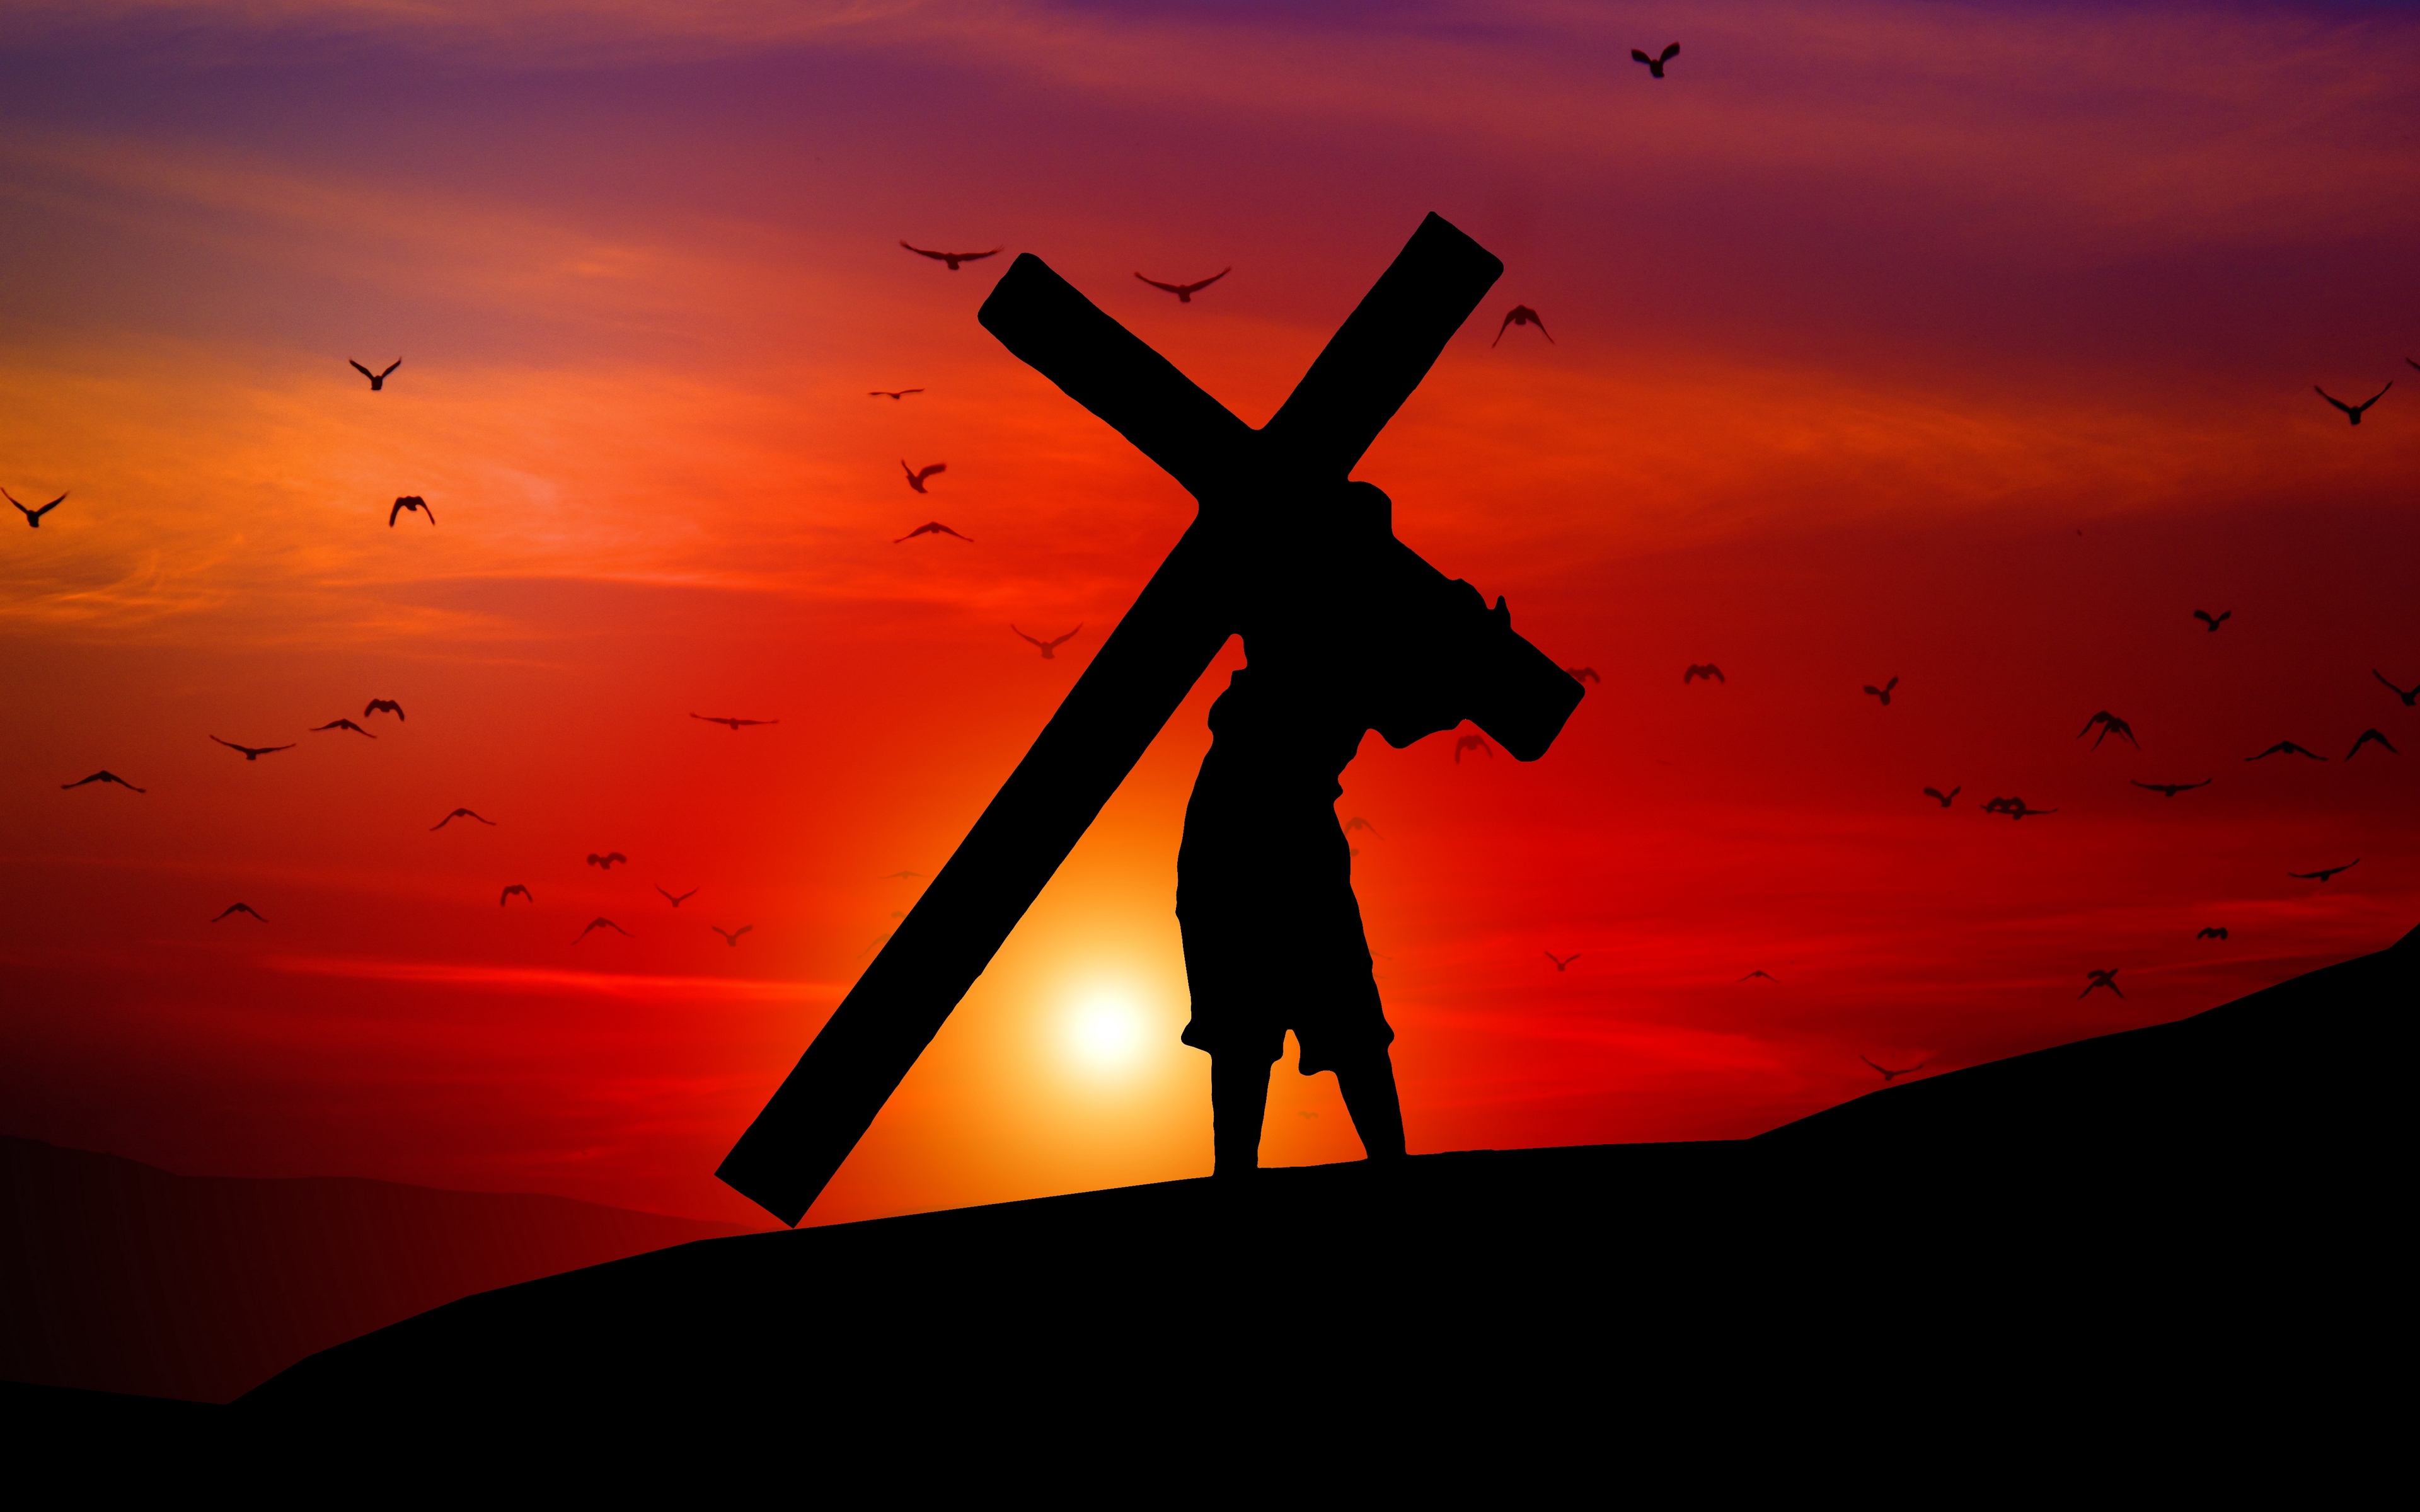 Wallpaper Cross, Silhouette, Faith, Burden - Best Cross Wallpapers Hd -  3840x2400 Wallpaper 